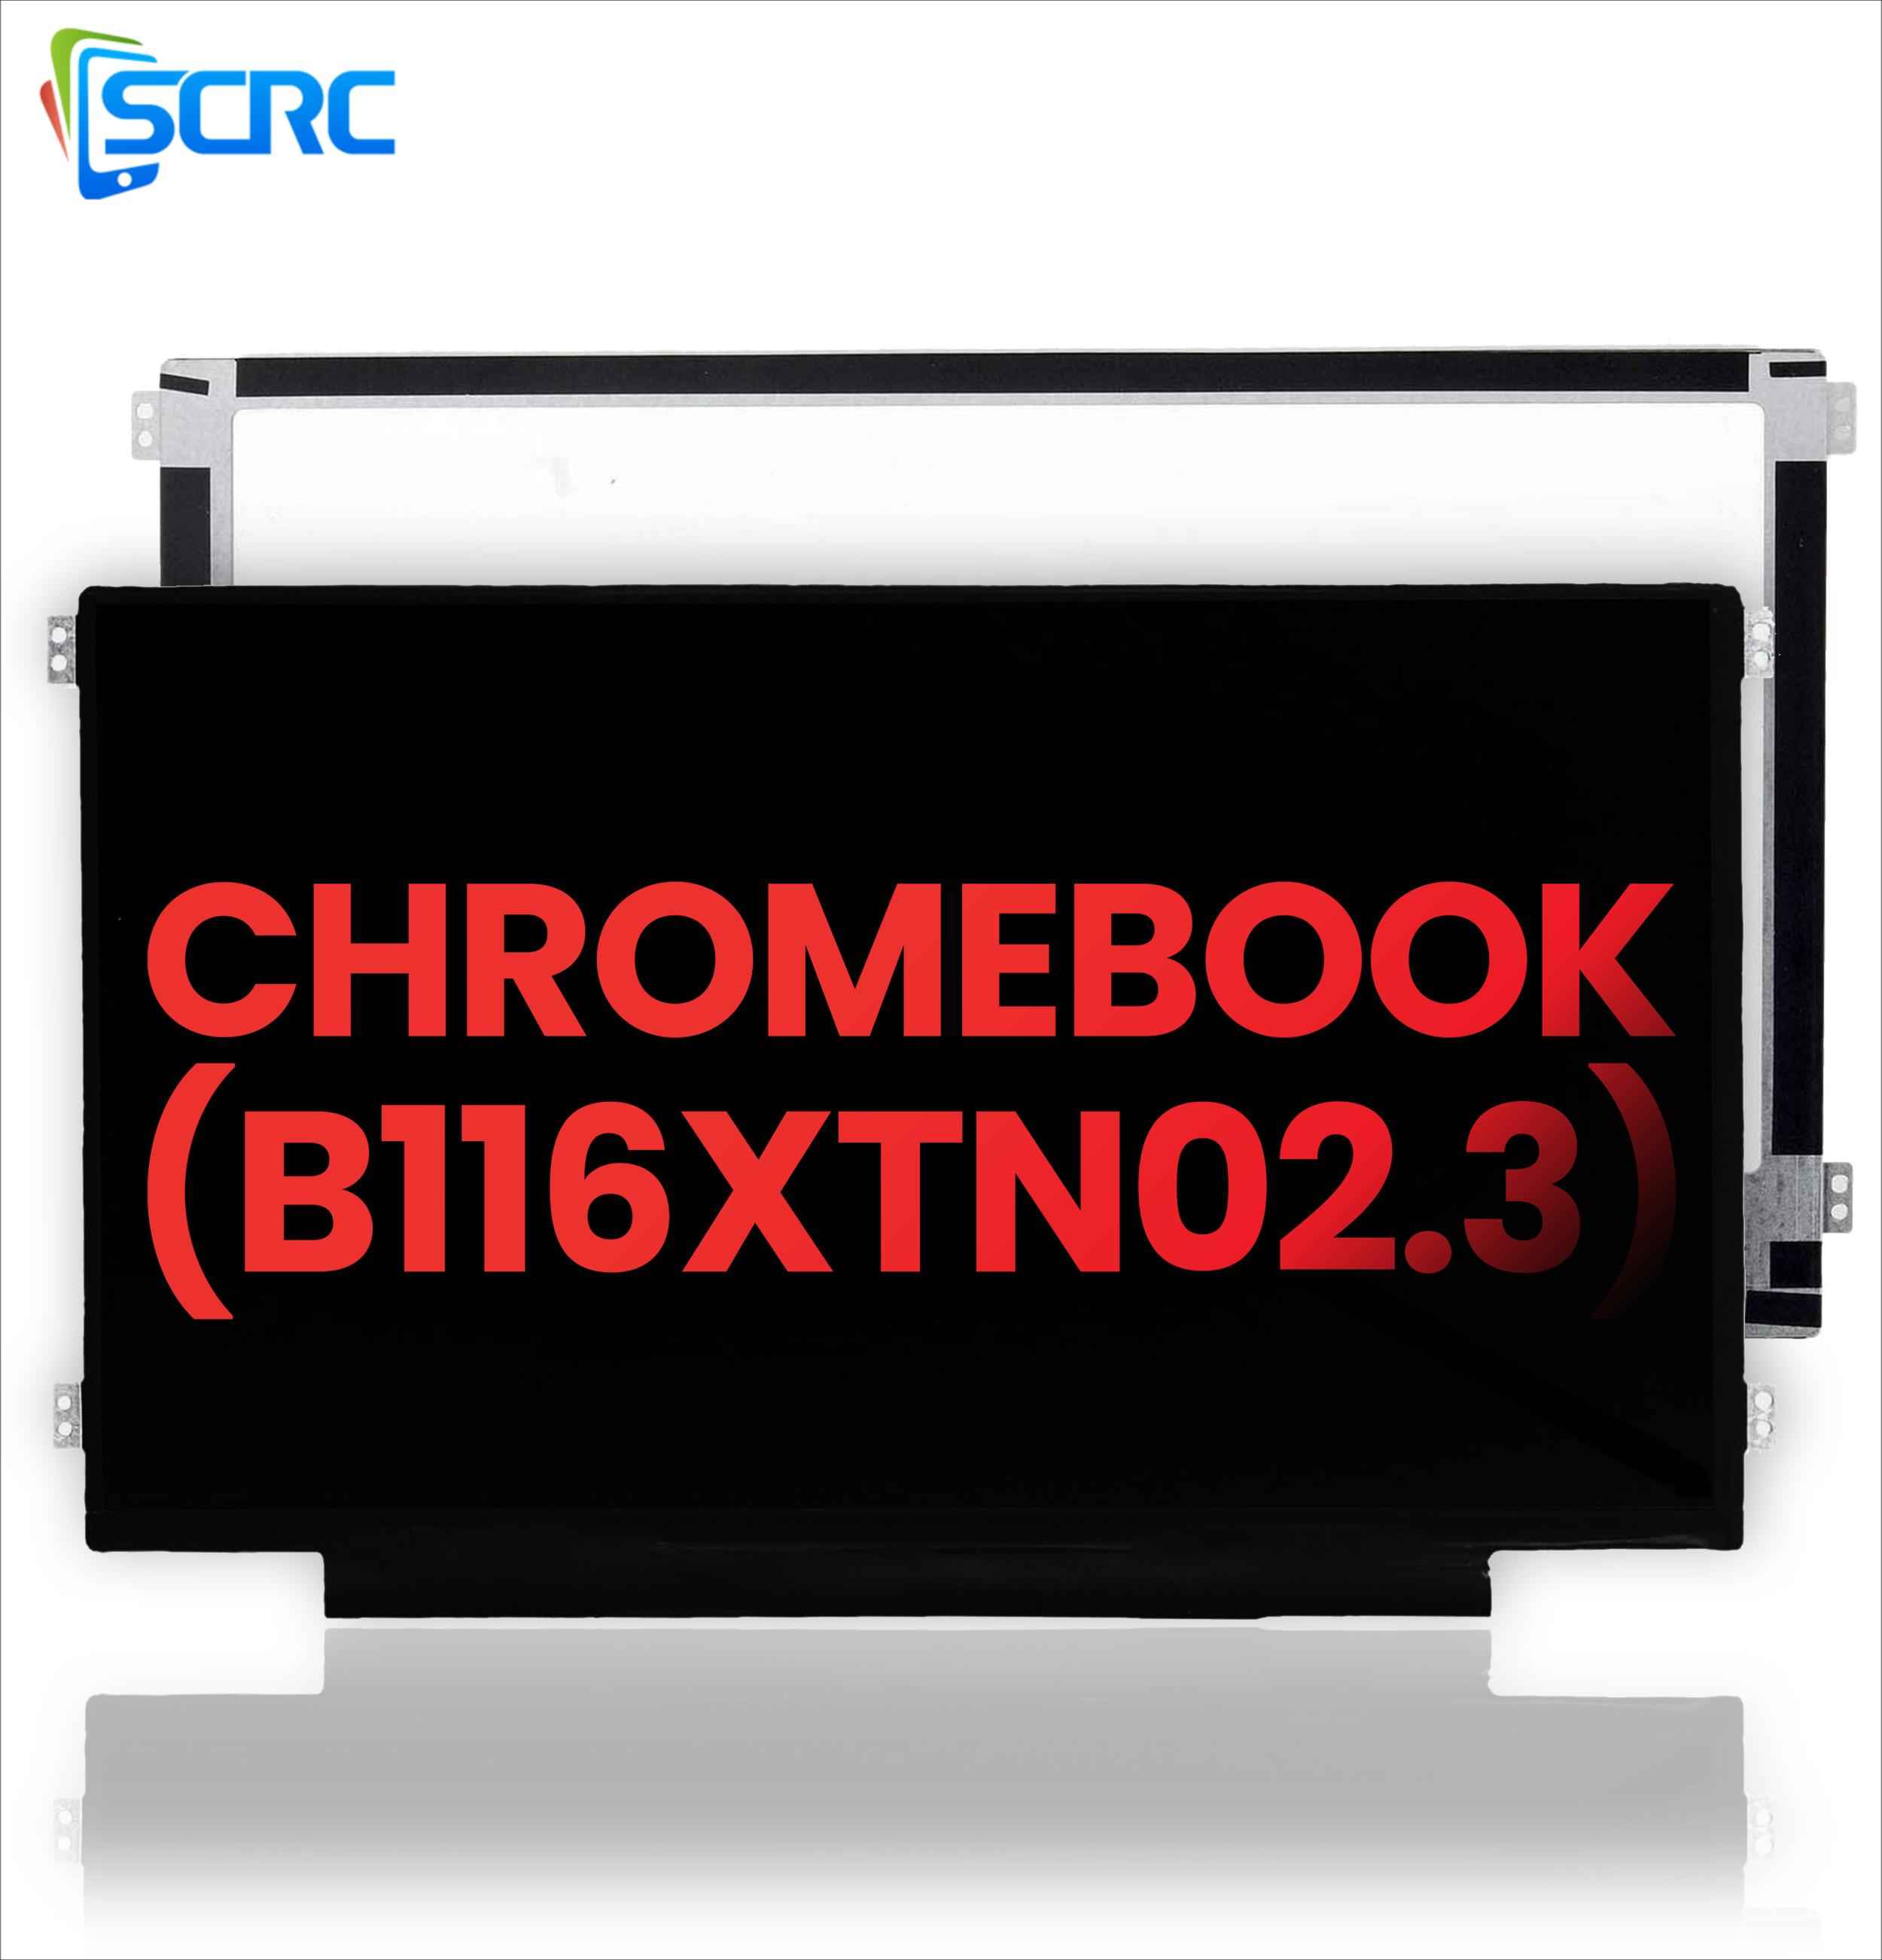 DELL Chromebook B116XTN02.3 üçün LCD Ekranın dəyişdirilməsi - 0